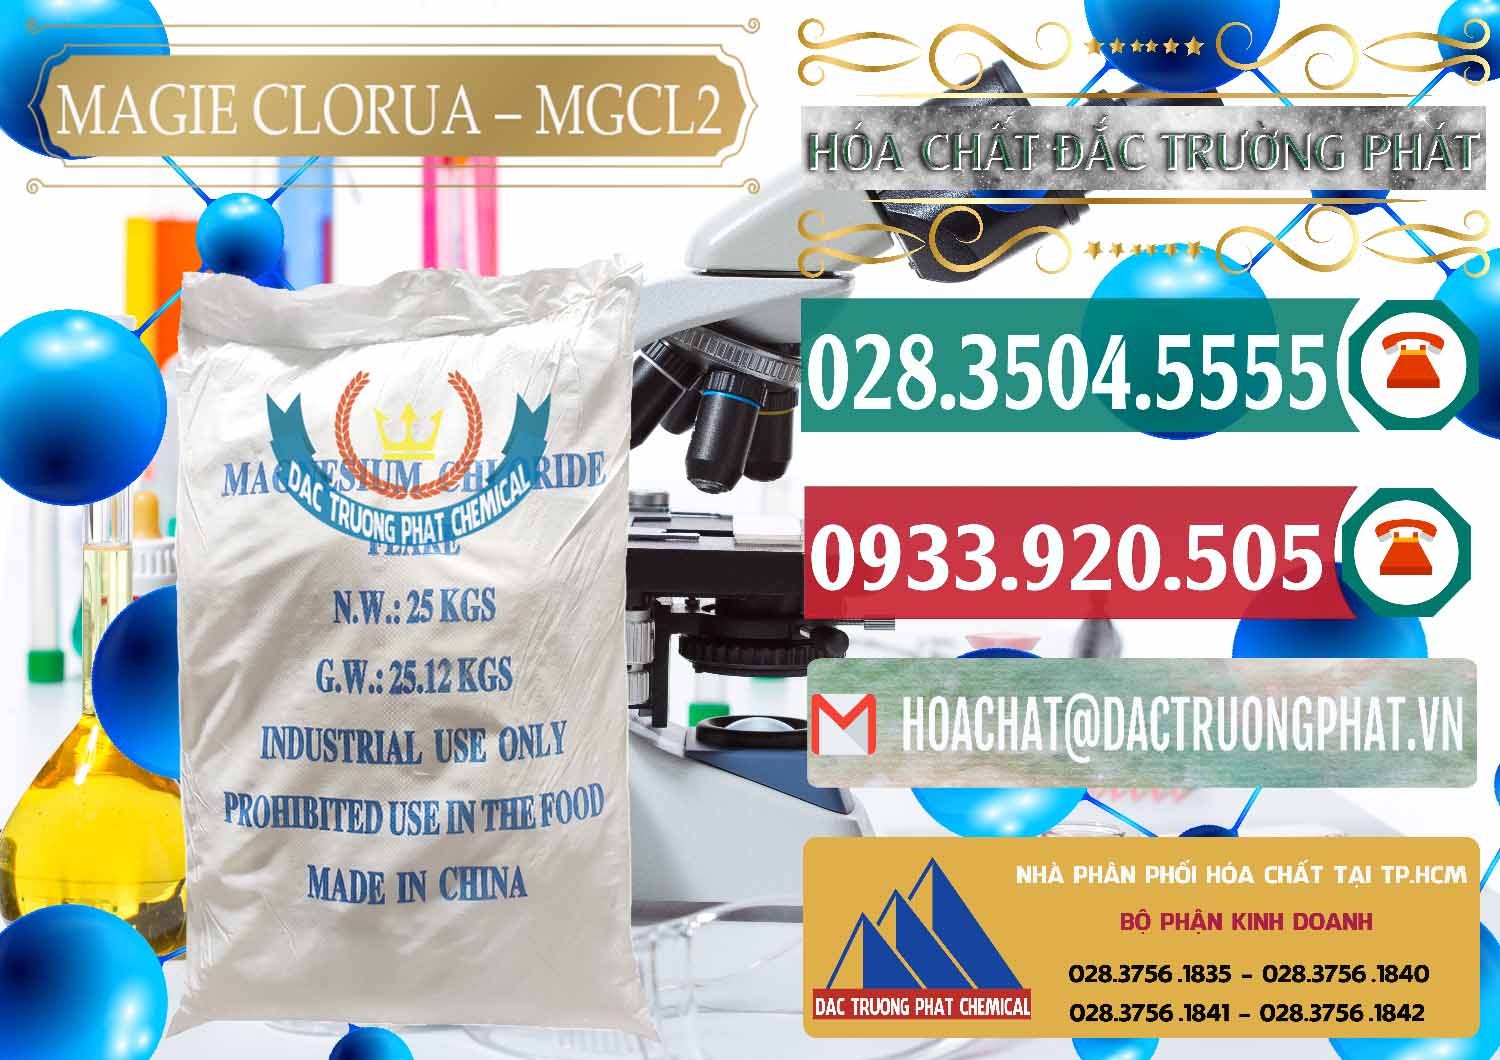 Cty chuyên bán ( cung cấp ) Magie Clorua – MGCL2 96% Dạng Vảy Trung Quốc China - 0091 - Đơn vị cung cấp & phân phối hóa chất tại TP.HCM - muabanhoachat.vn